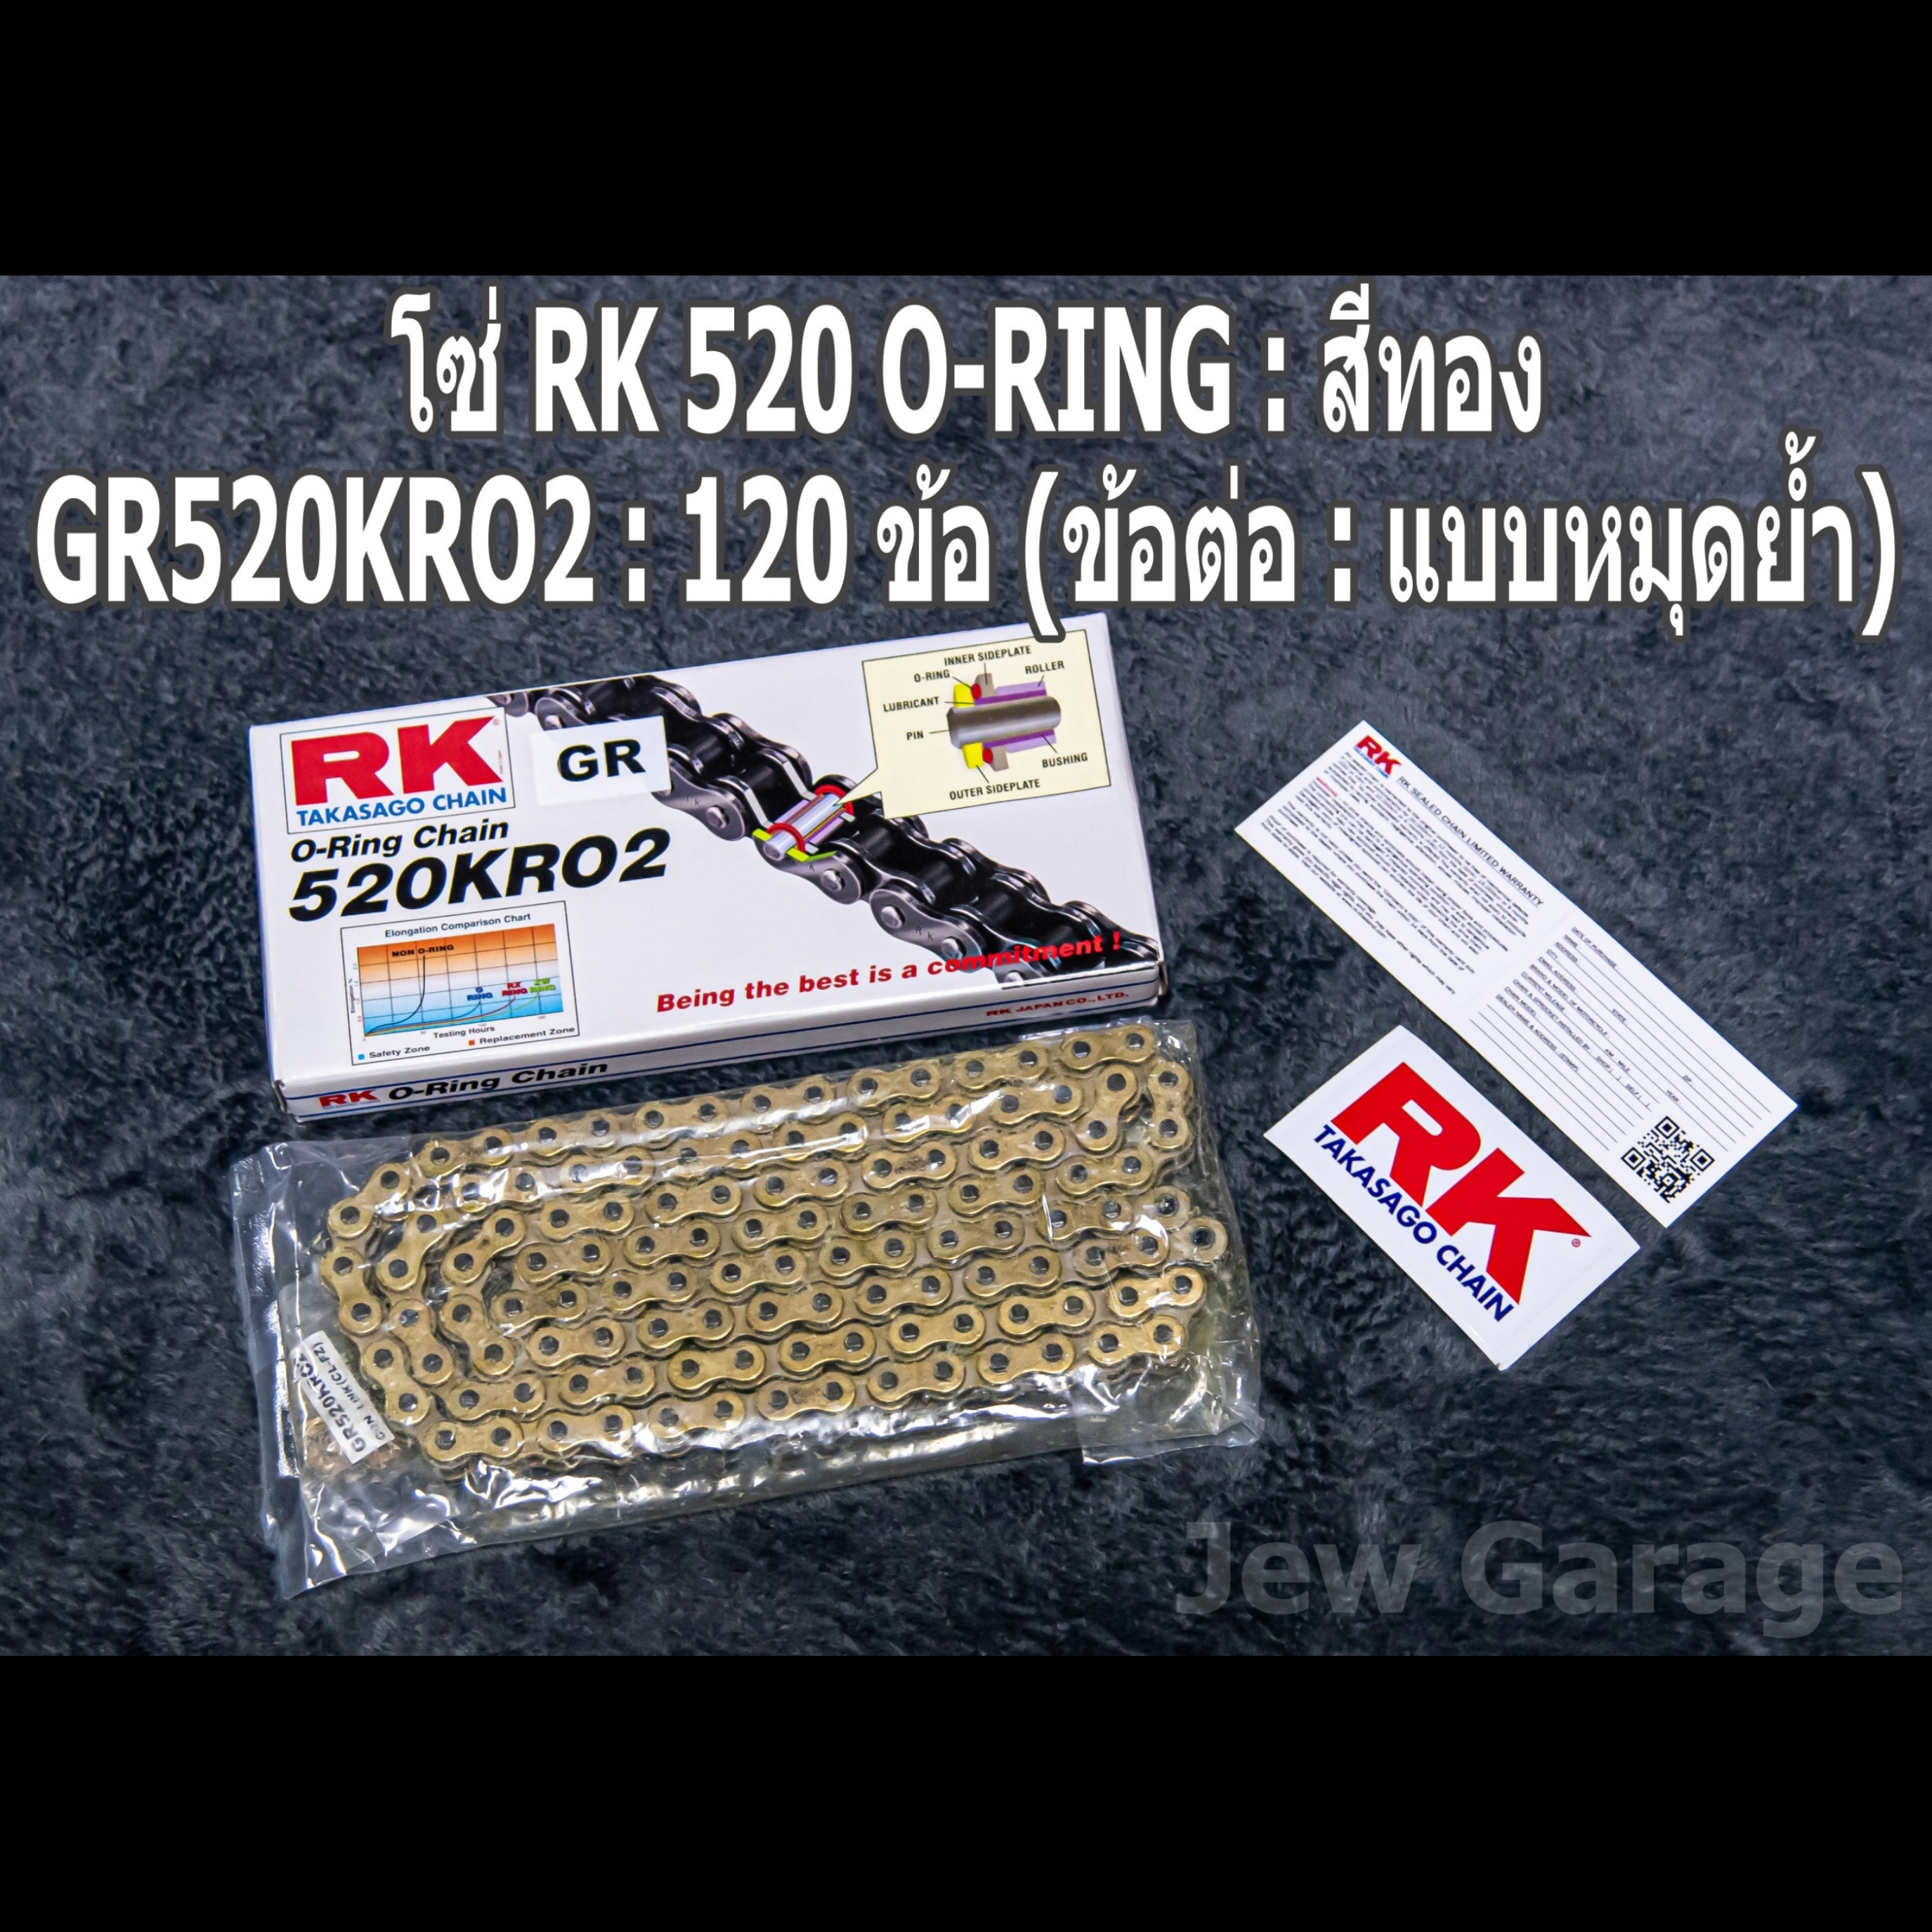 ชุดโซ่สเตอร์ RK  : โซ่ RK 520 O-RING สีเหล็ก สีทอง สีดำหมุดทอง และ สเตอร์ RK หน้า + สเตอร์หลัง ขนาด 15/45 สำหรับรถ Kawasaki : Z800  ตัวเลือกสีโซ่ สเตอร์ RK 15/45 + โซ่ RK 520 O-RING สีทอง